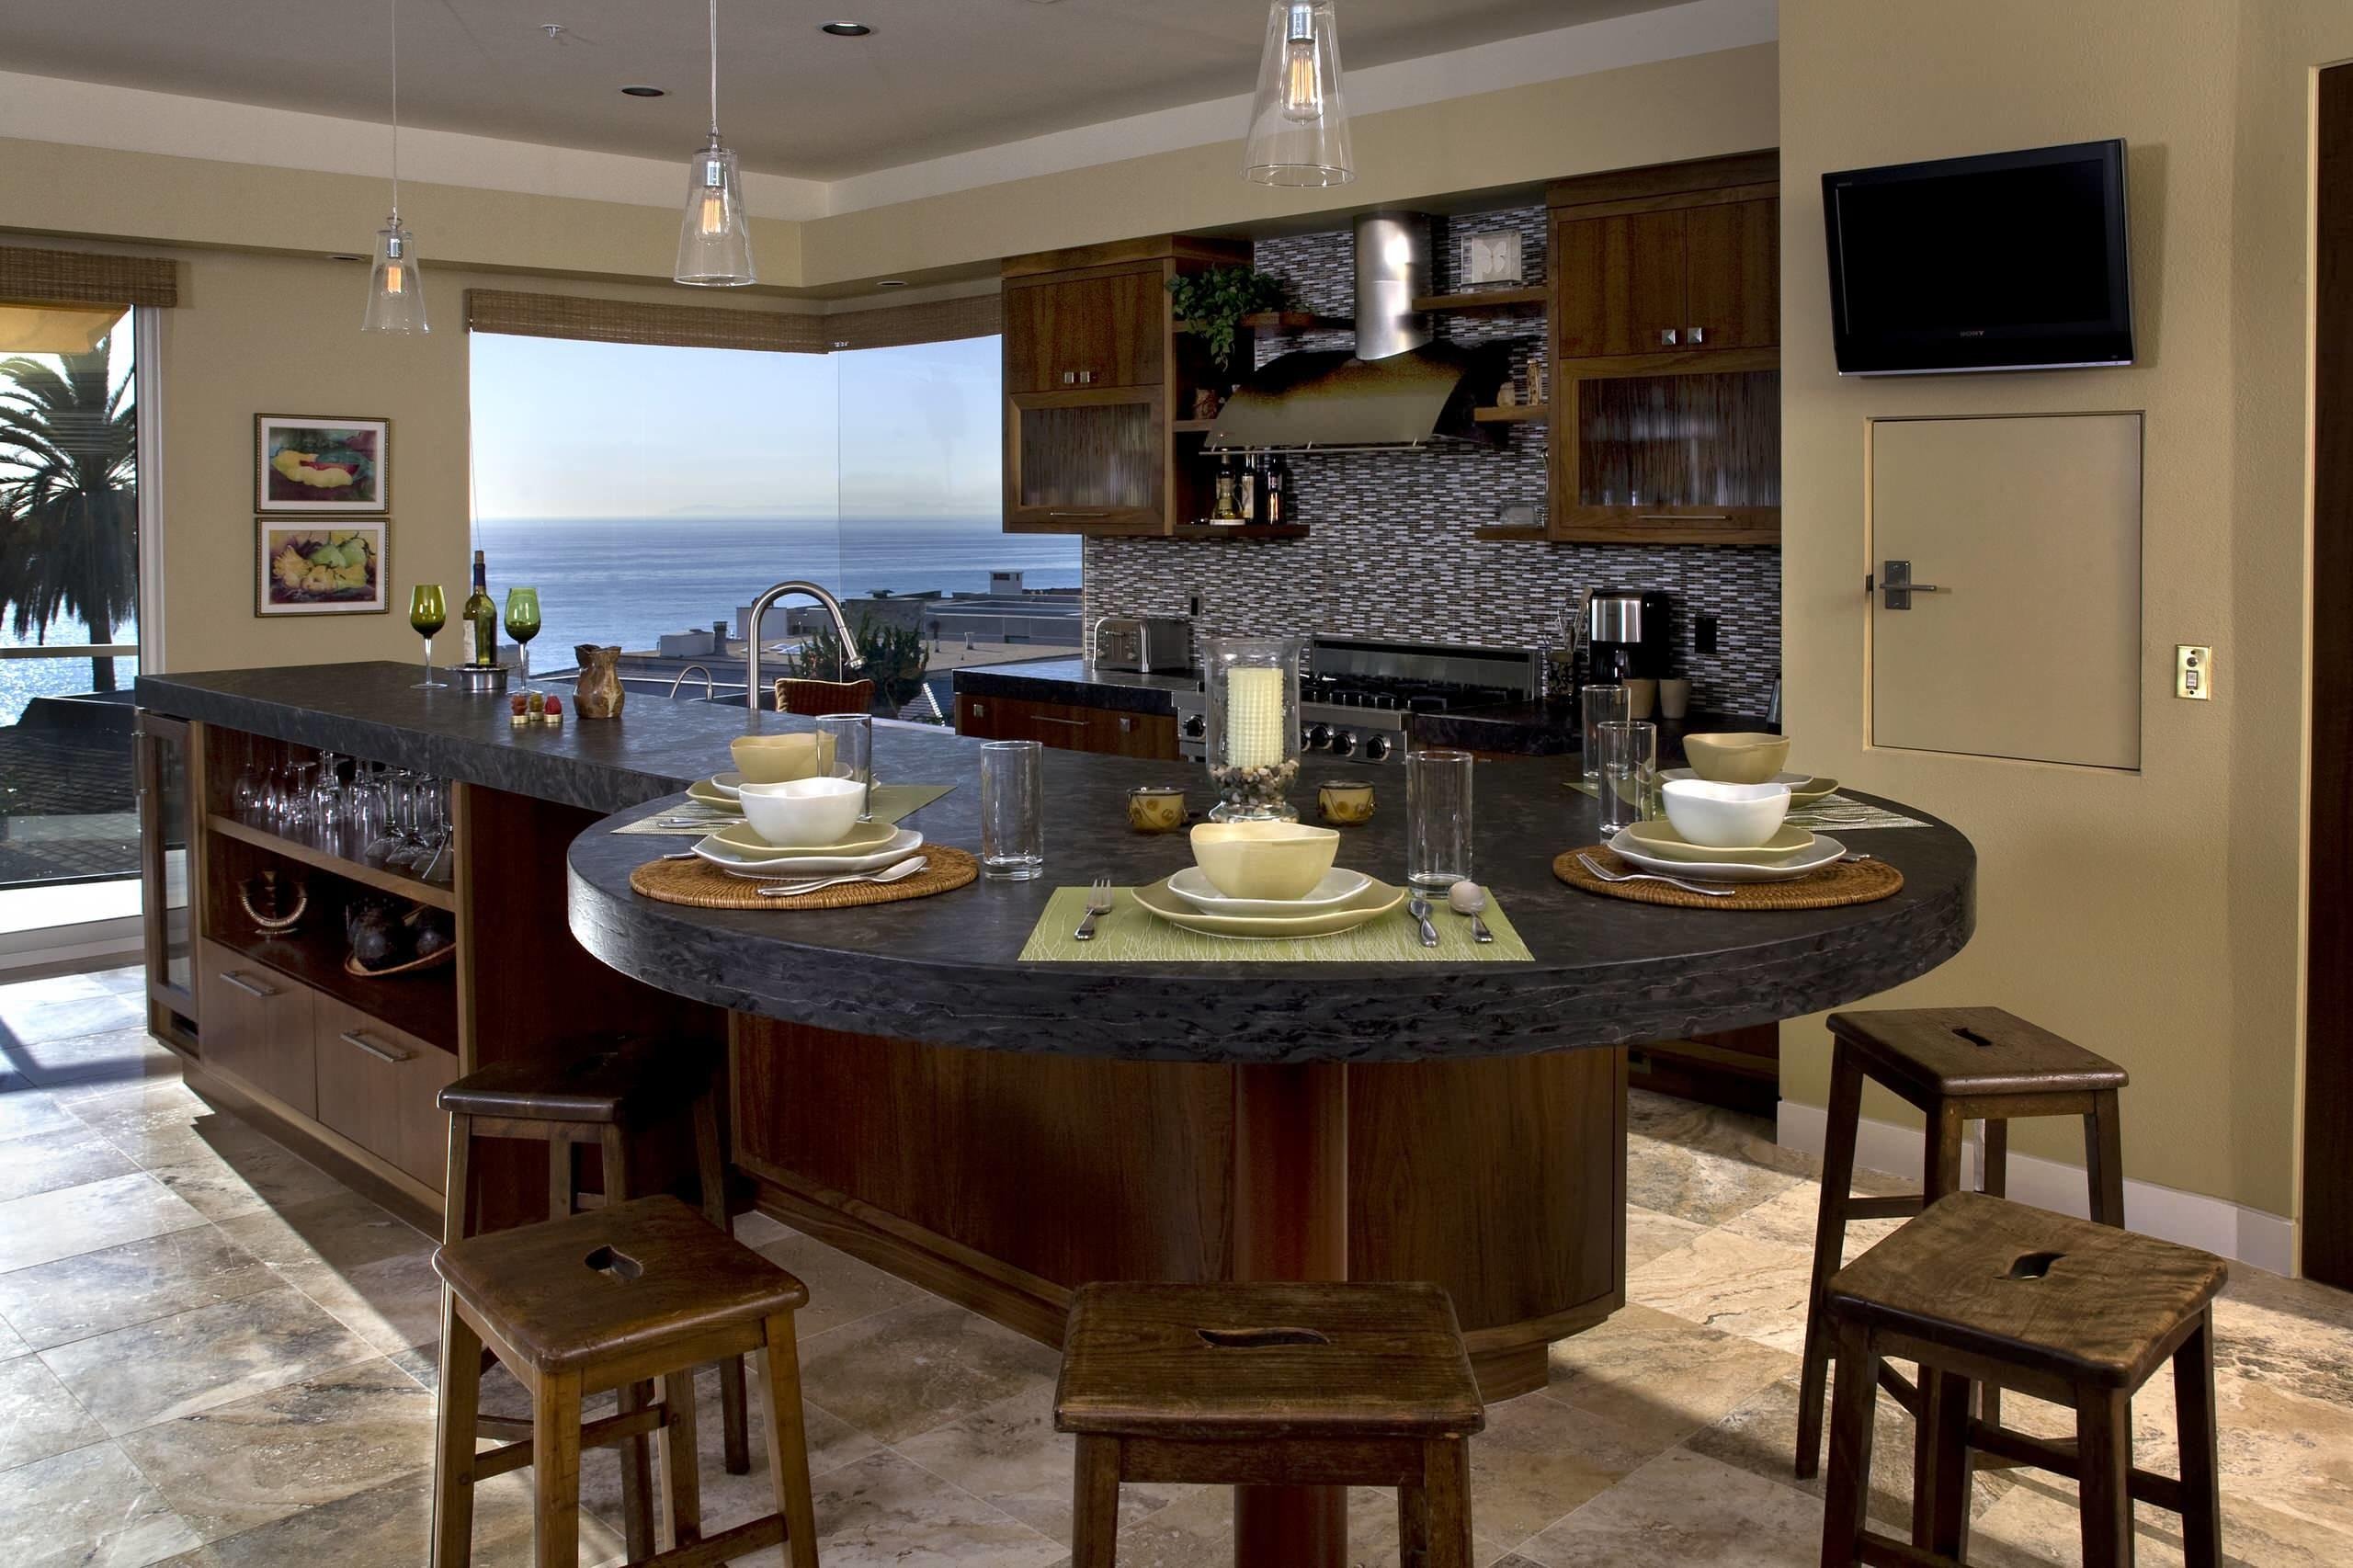 Остров обеденный. Кухонный остров. Остров на кухне. Кухонный остров с обеденным столом. Кухонный остров с обеденной зоной.